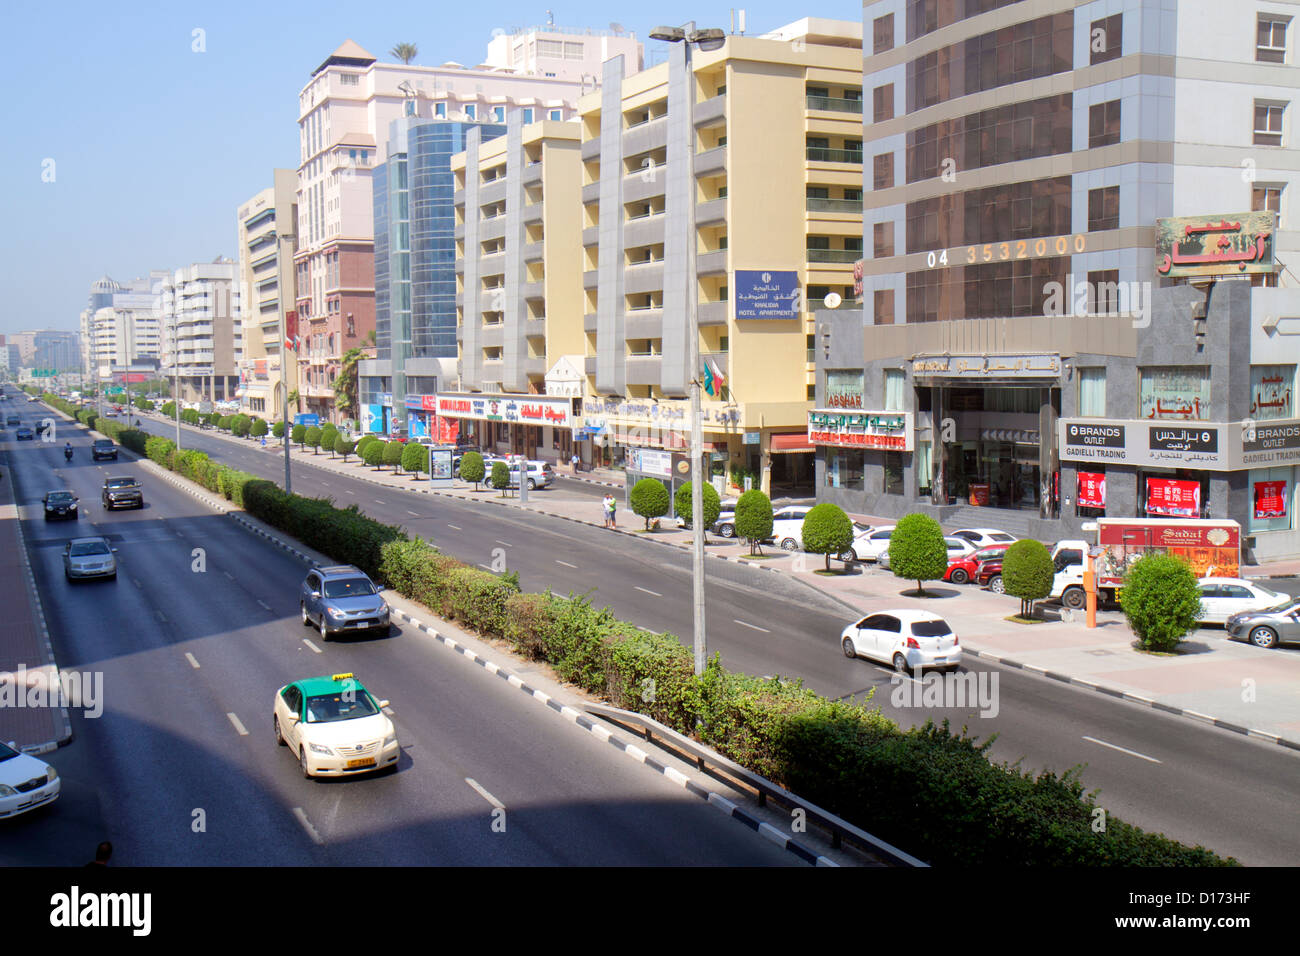 Dubai UAE,Emirati Arabi Uniti,Deira,al Rigga,al Maktoum Road,Street scene,business,distretto,traffico,edifici,skyline della città,inglese,arabo,lingua, Foto Stock